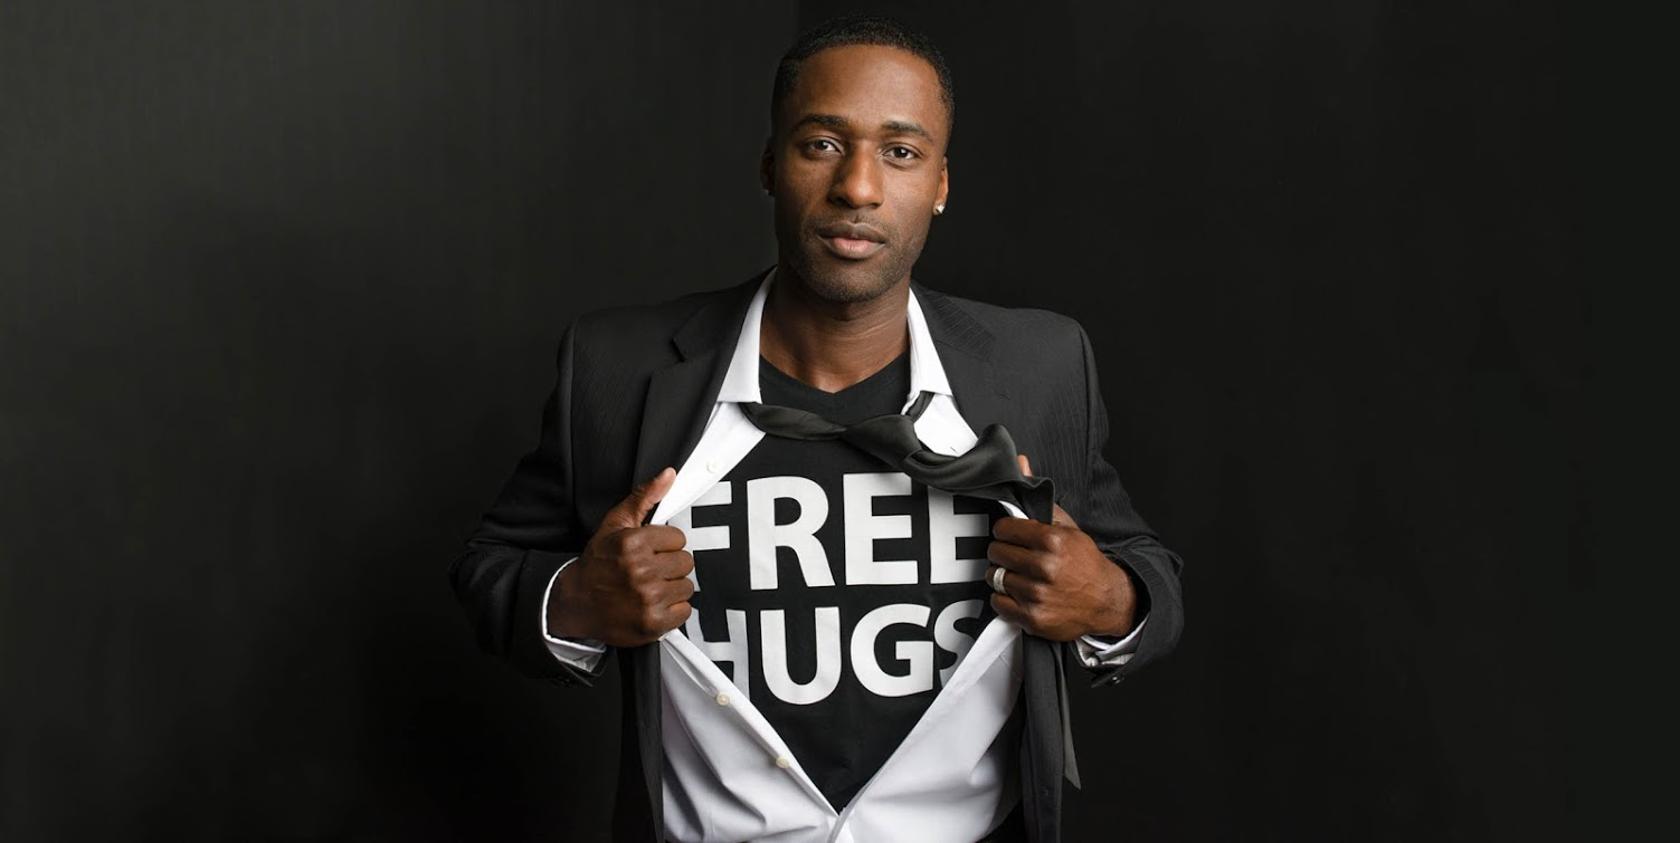 Free Hugs Guy will visit PSU